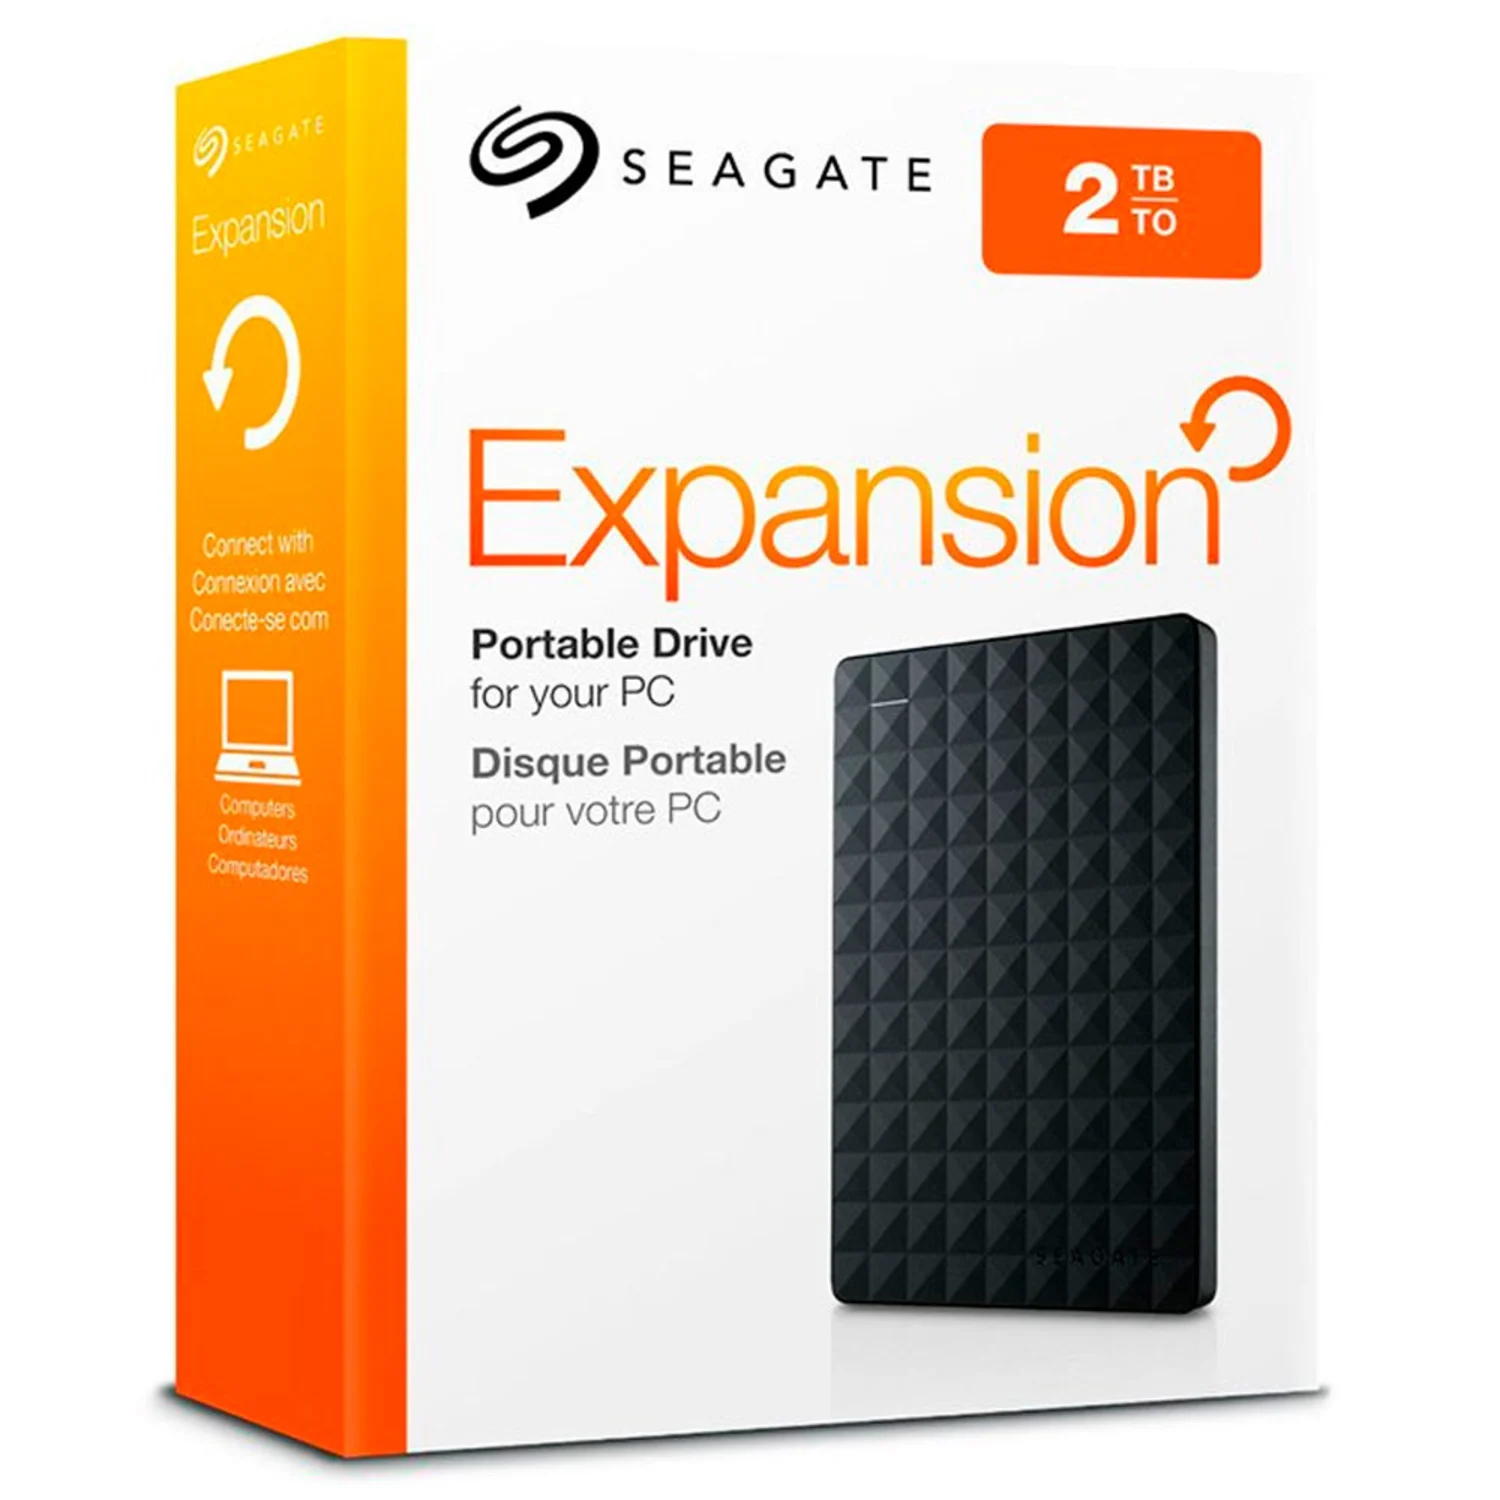 HD Externo Seagate Expansion 2TB / 2.5" / USB 3.0 - Preto (STEA2000400)